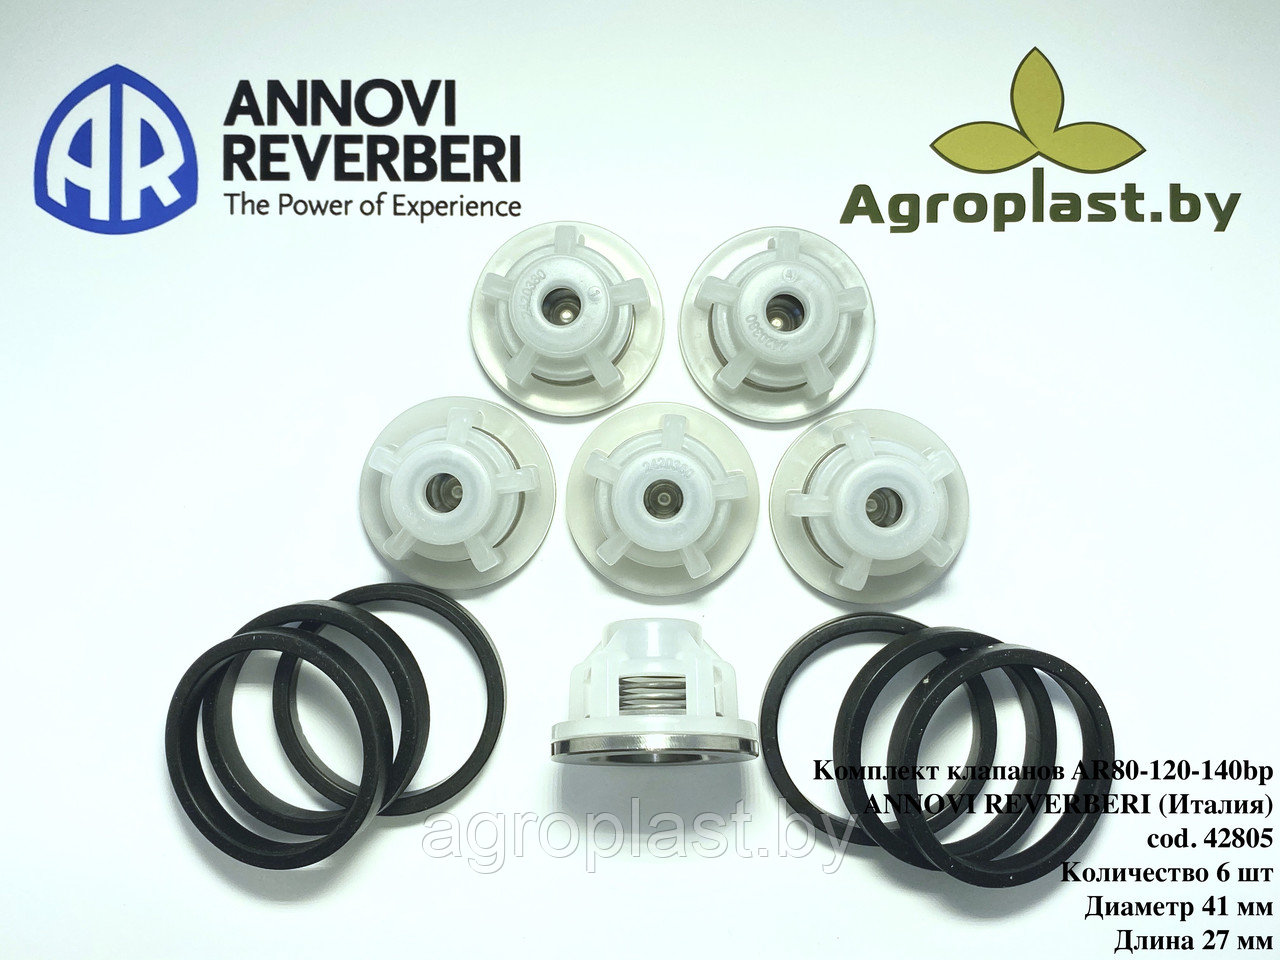 Комплект клапанов для насоса Annovi Reverberi AR 42805